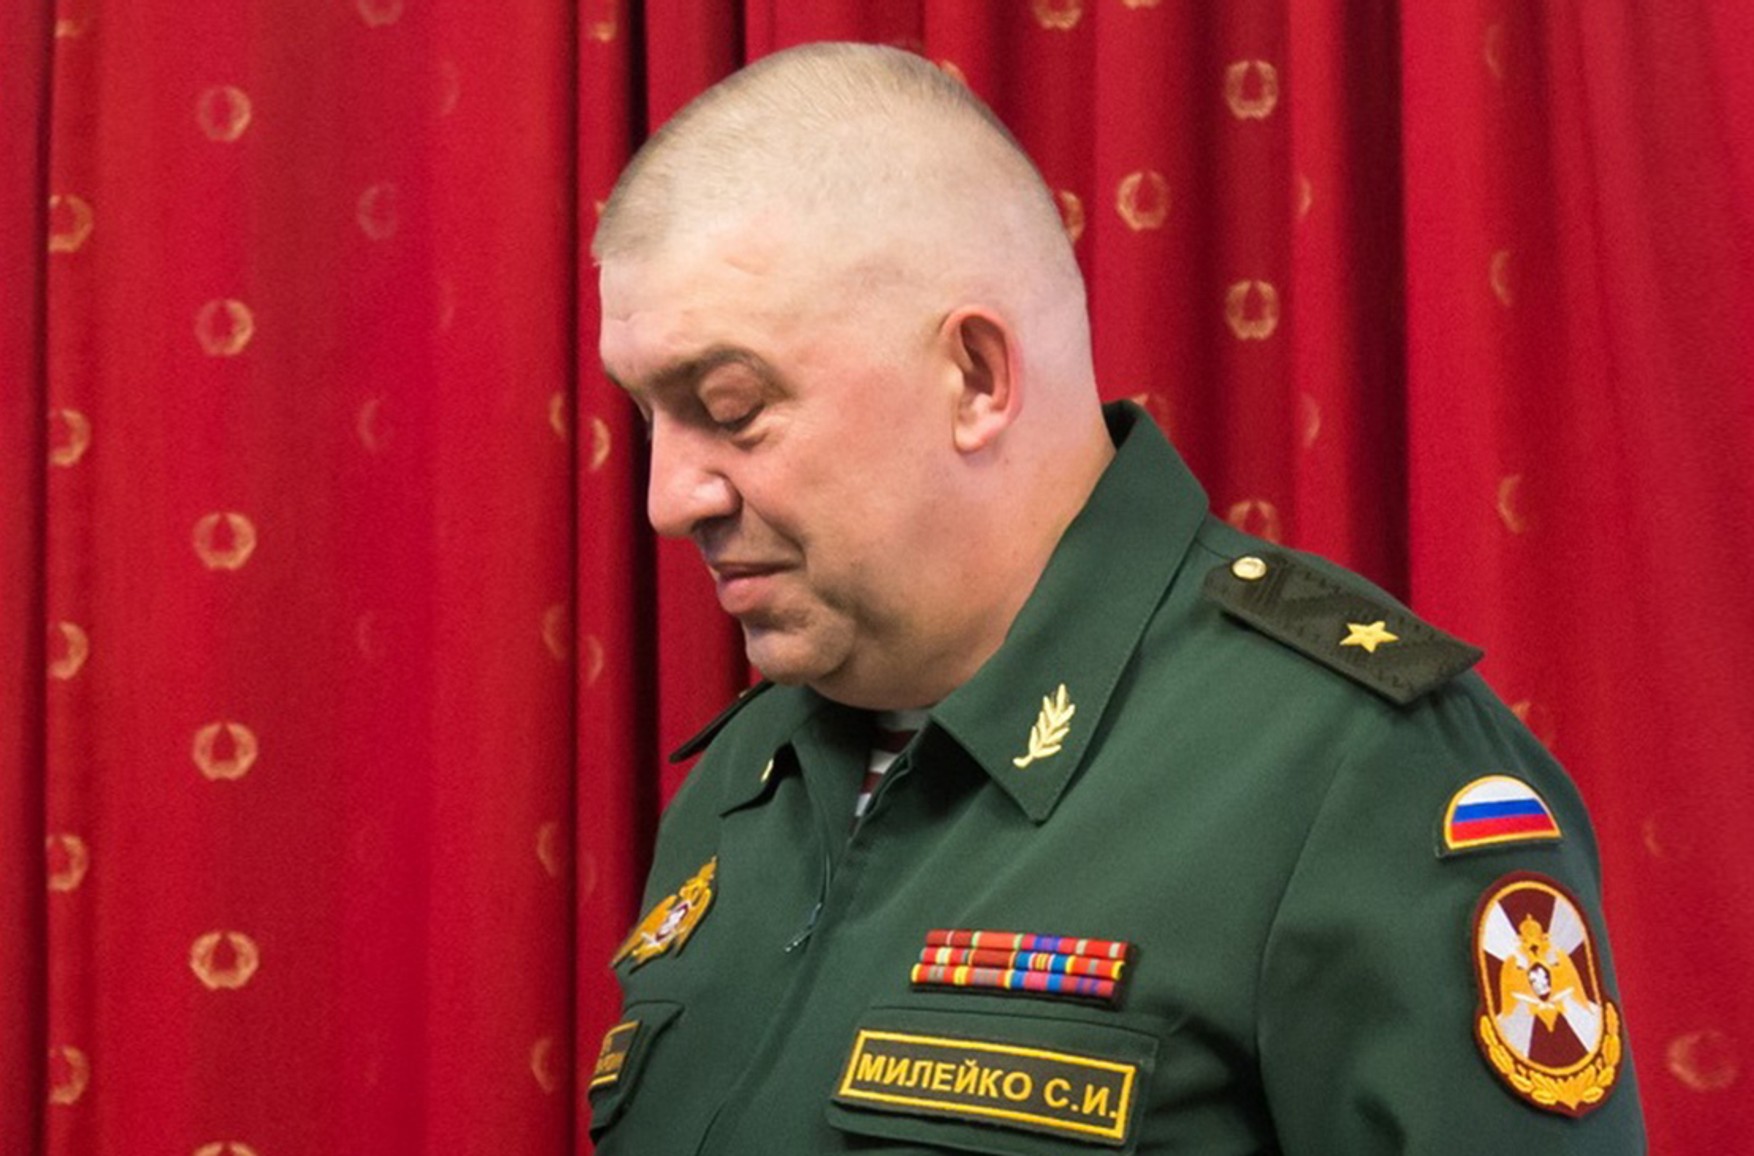 У Москві затримали екс-заступник голови Росгвардіі Сергія Мілейко у справі про шахрайство